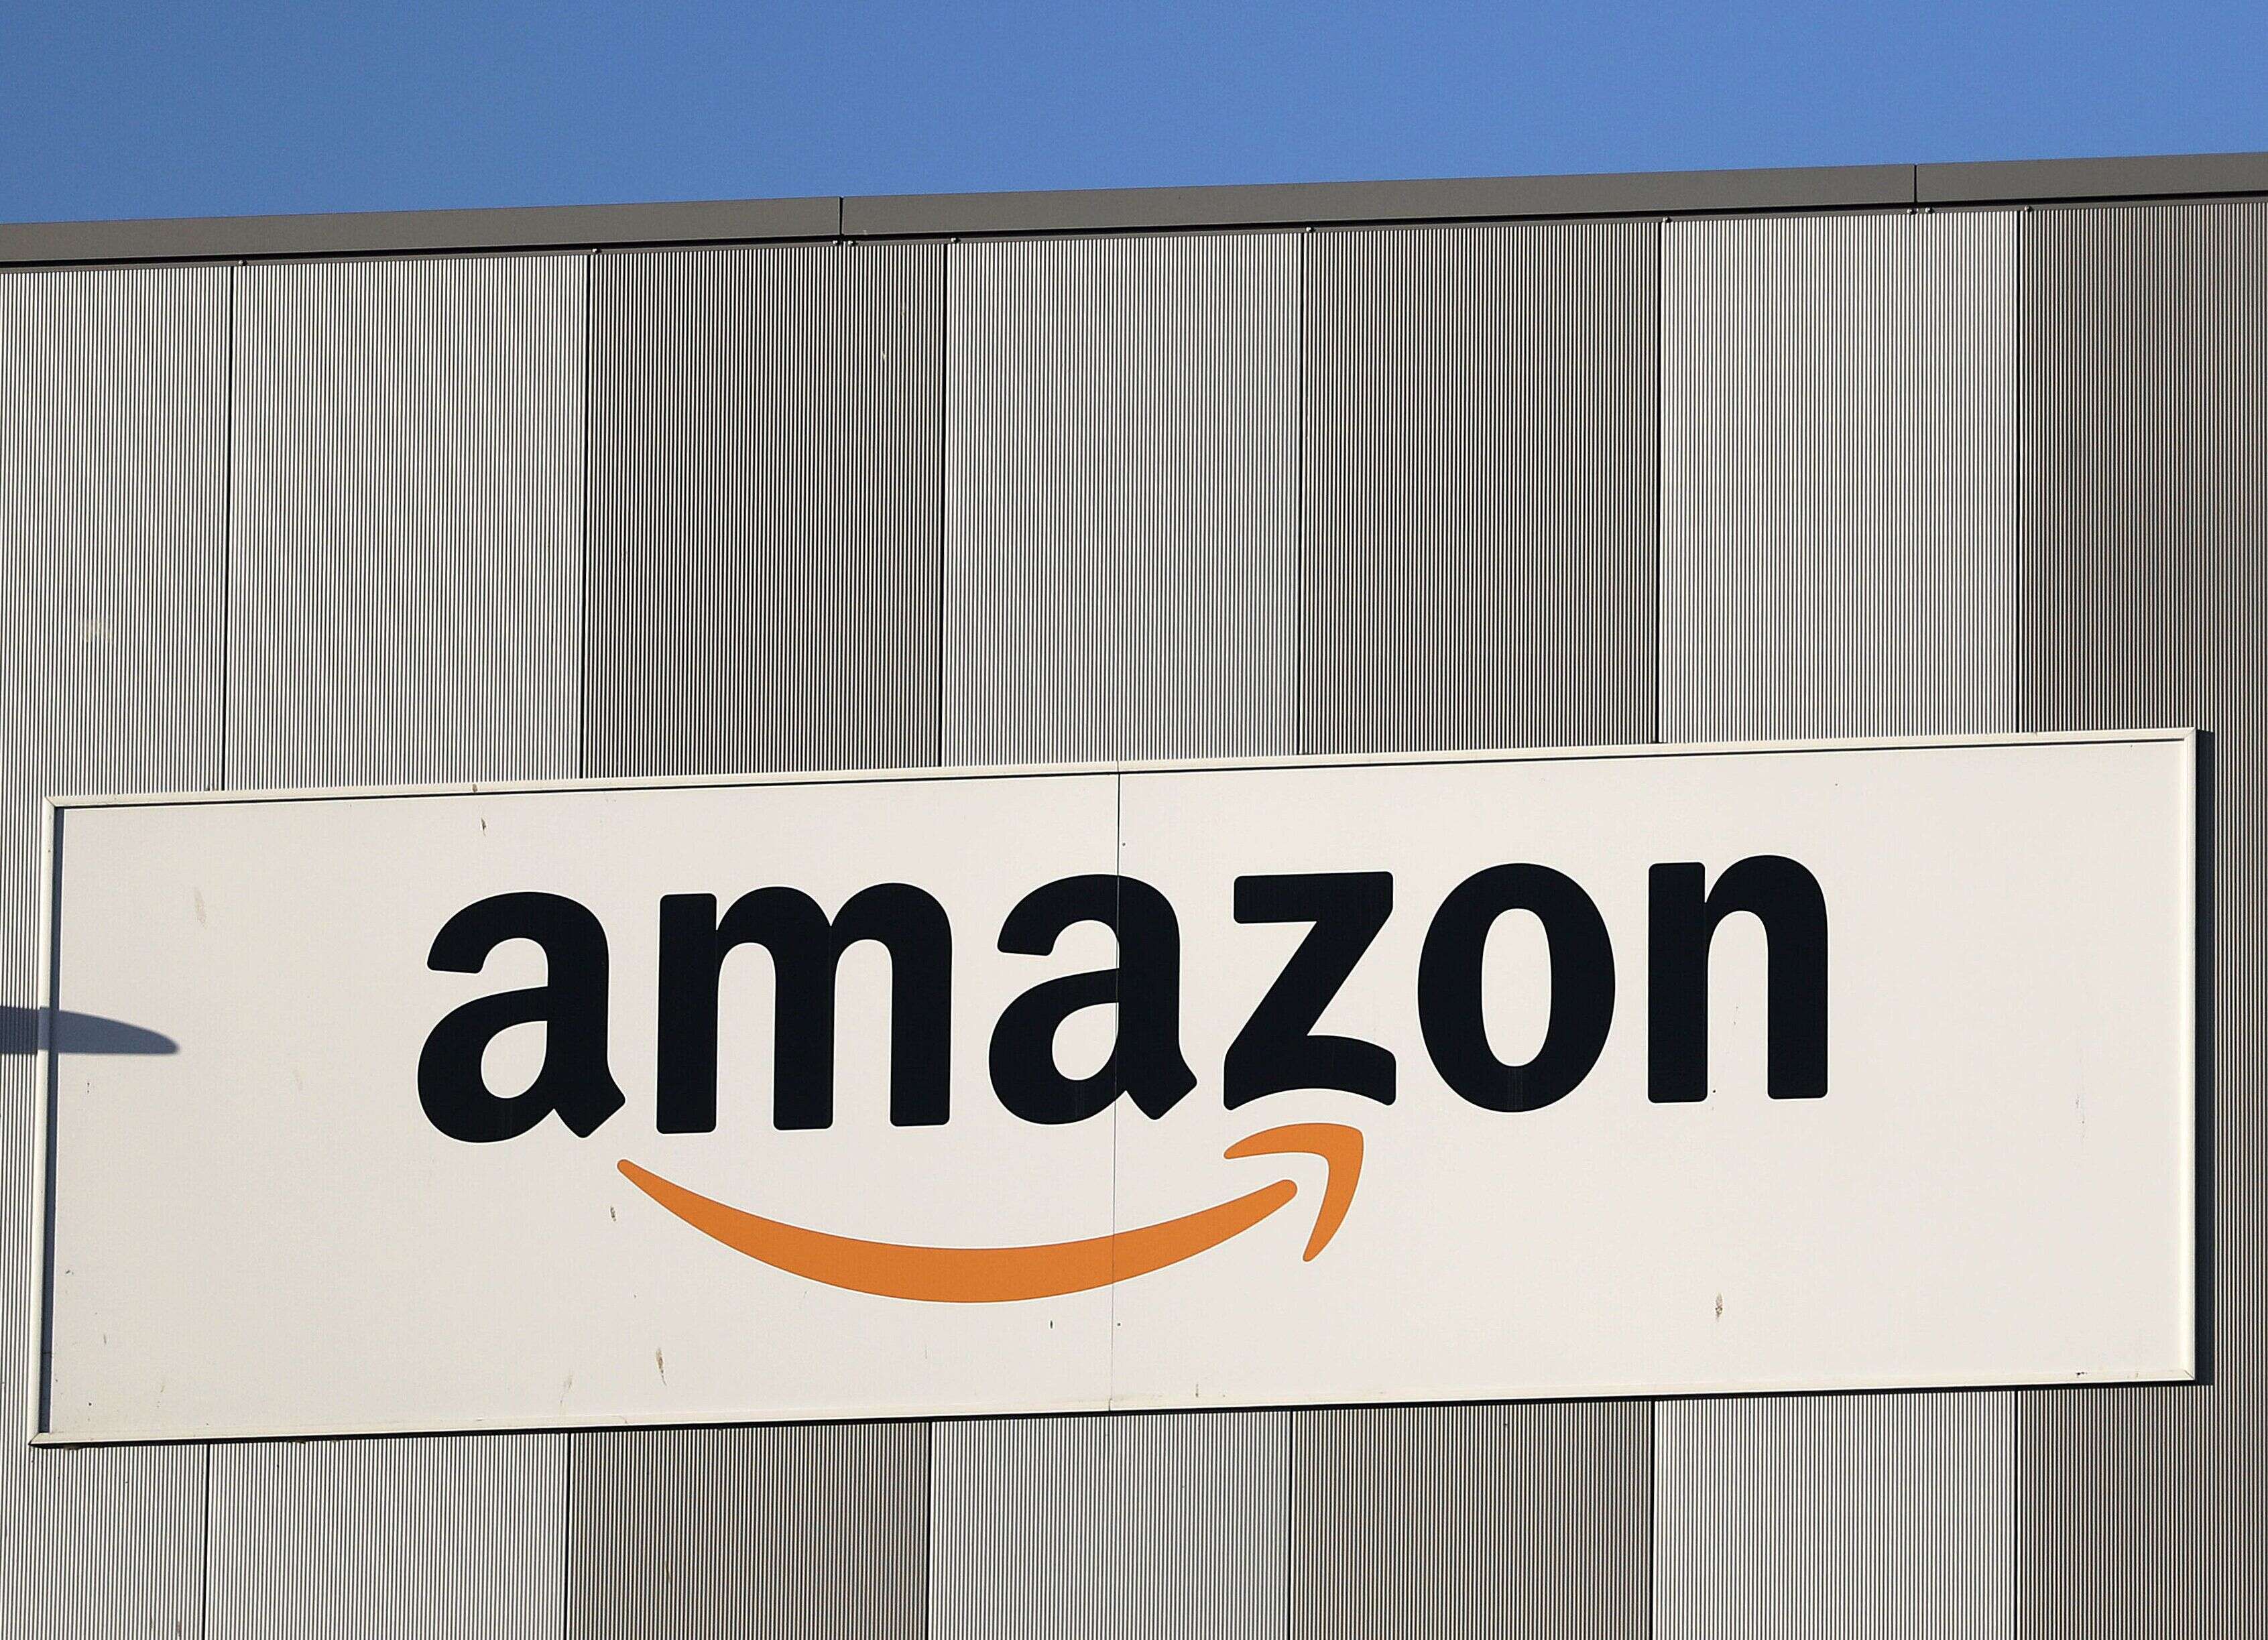 Amazon reconnaît que certains de ses employés sont contraints d'uriner dans des bouteilles (photo d'illustration prise le 31 mars 2021 au centre Amazon de Cologne en Allemagne)